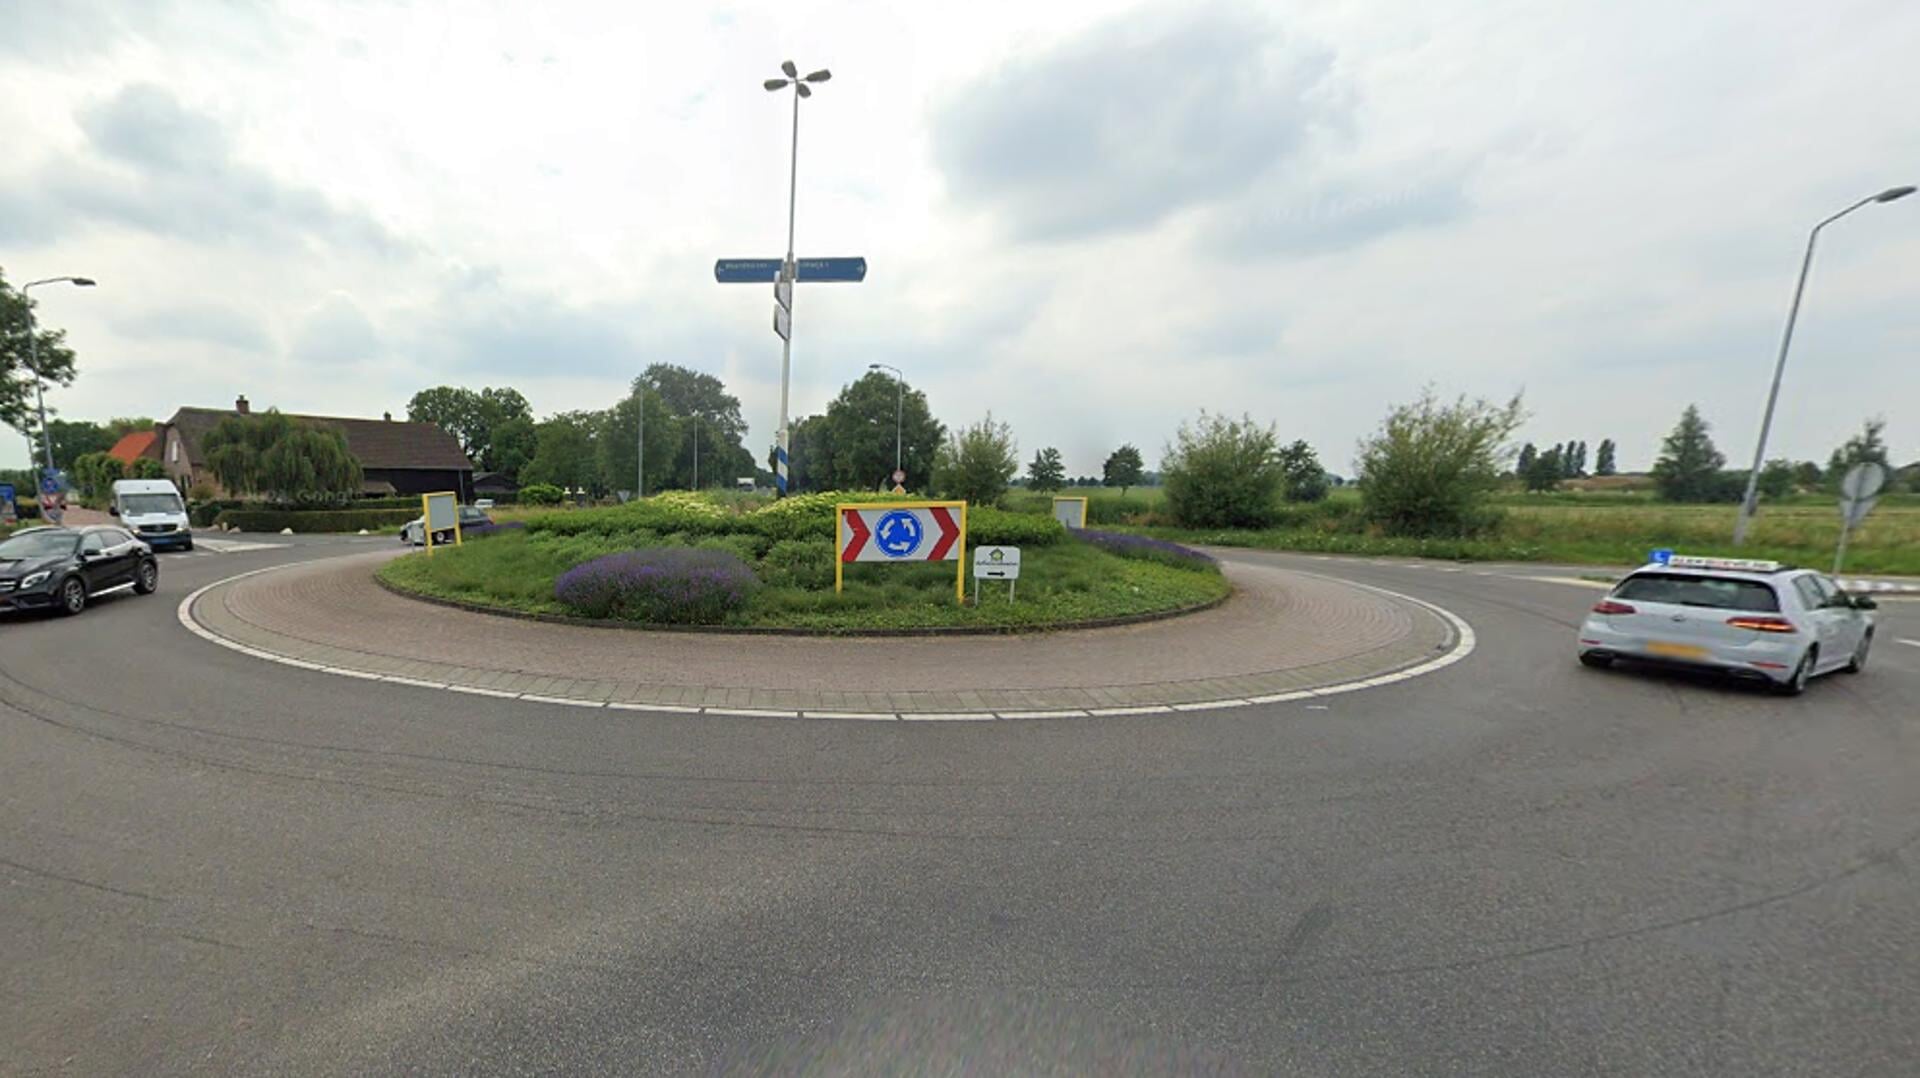 • De rotonde tussen Uitwijk en Waardhuizen.